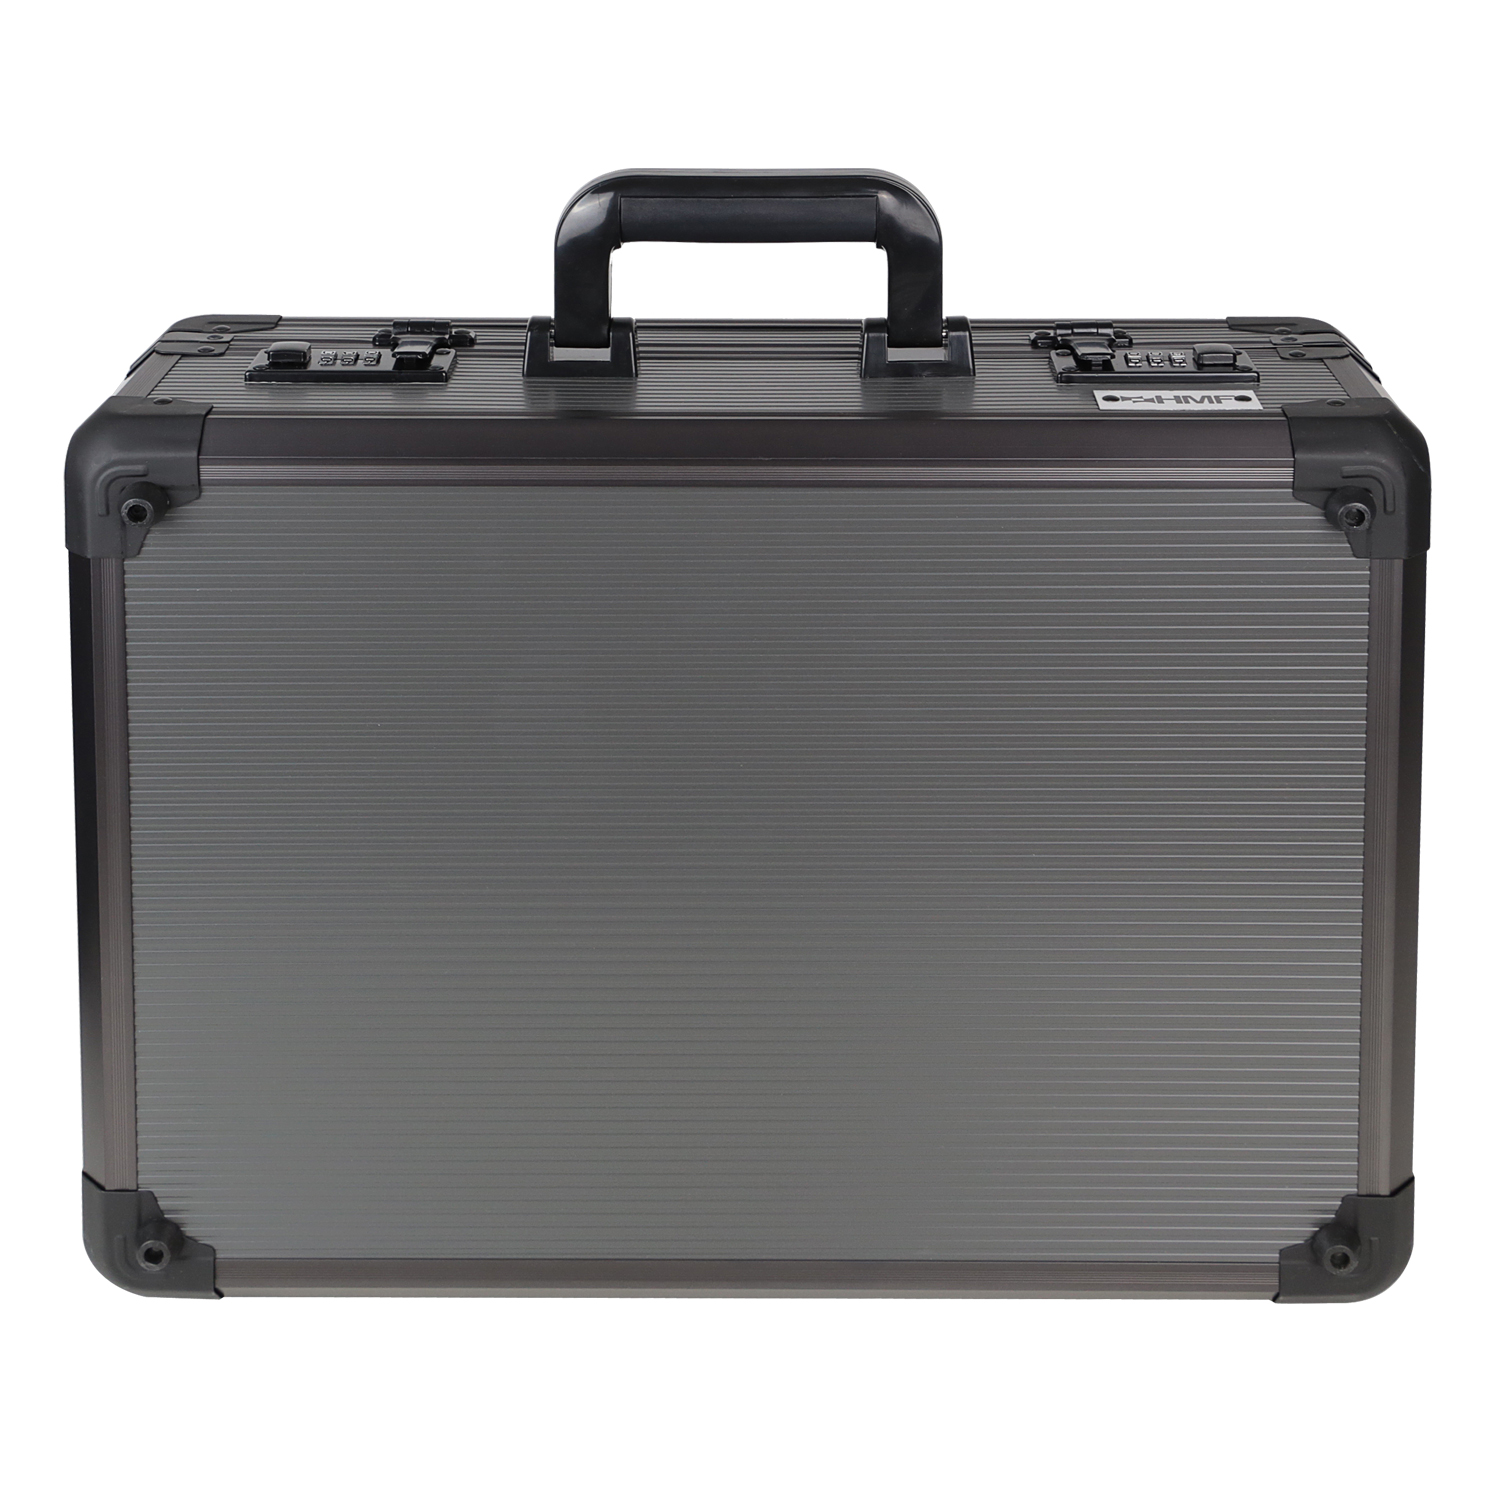 Koffergriff im 2er Set von HMF mit den Maßen 16.5 x 7.5 cm in Schwarz